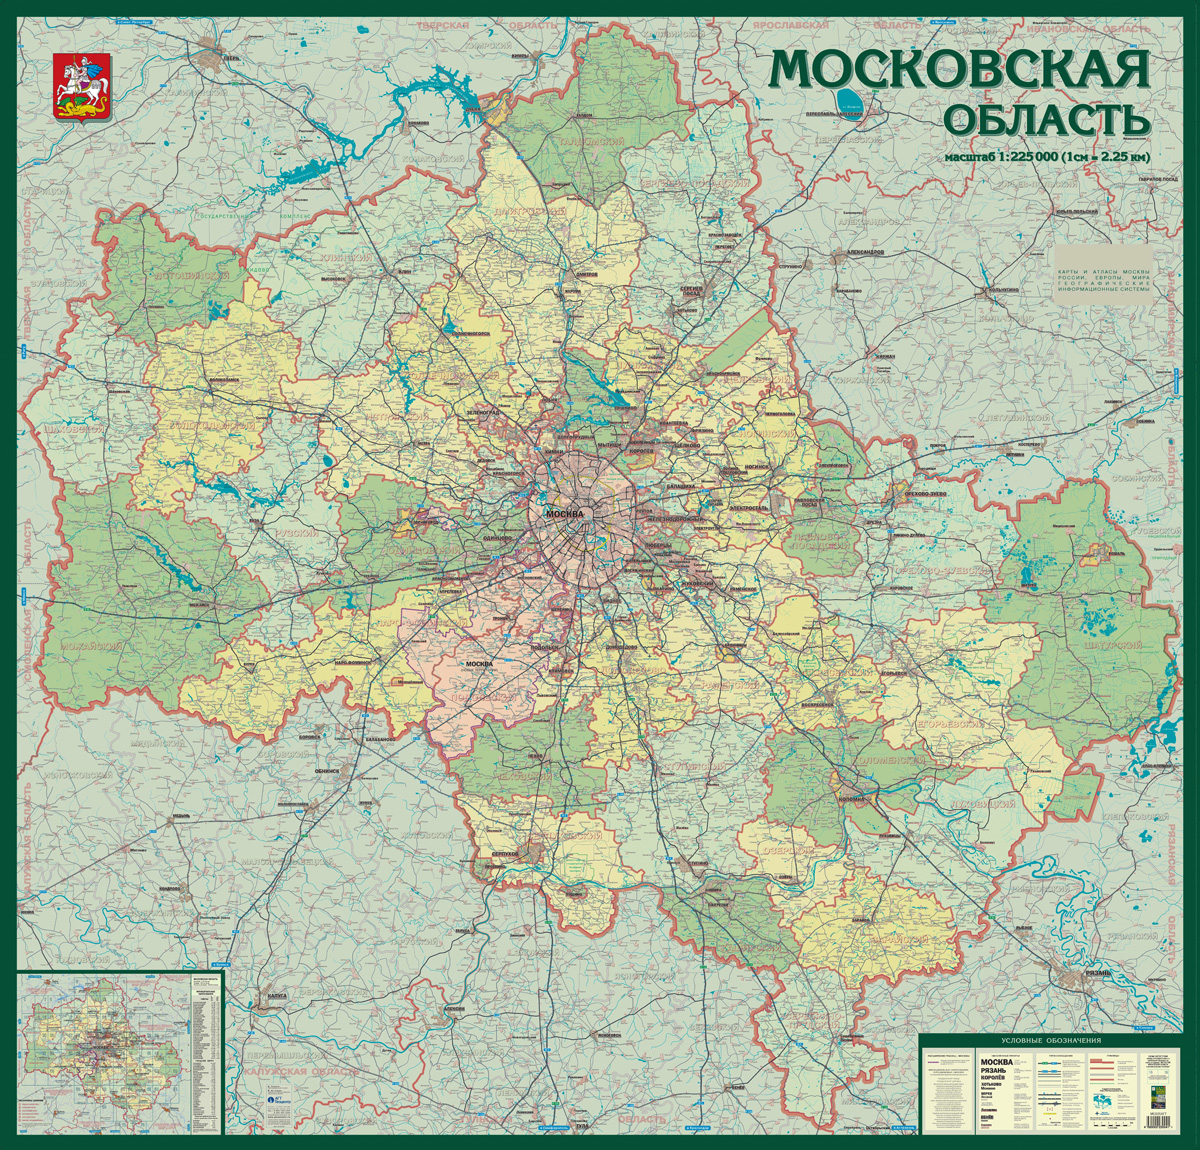 Схема лэп московской области на карте